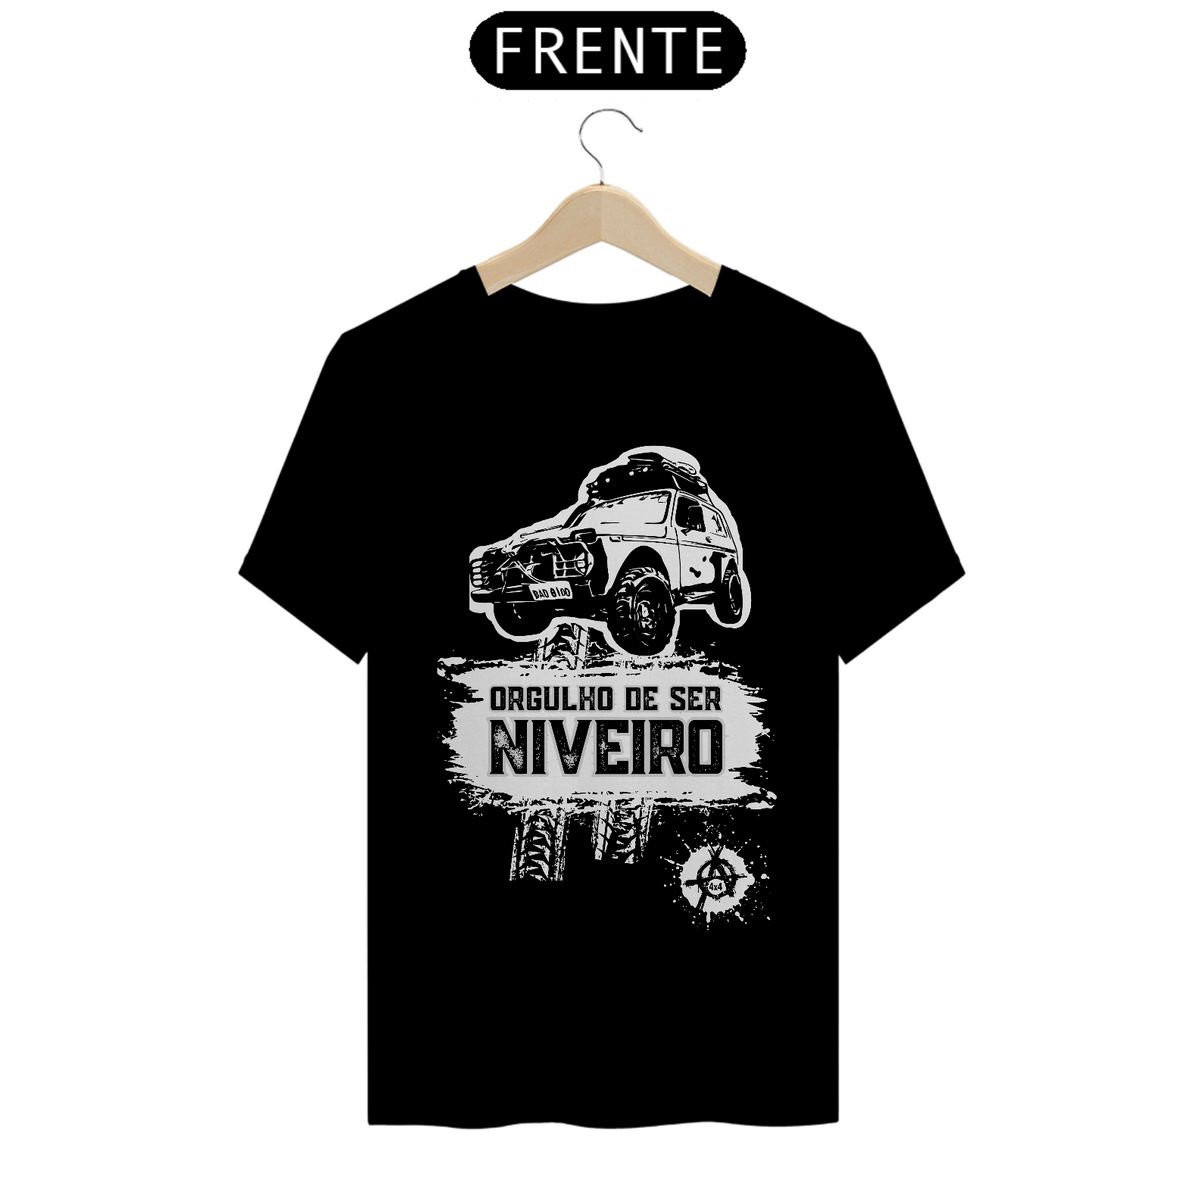 Nome do produto: T-Shirt Quality - Orgulho Niveiro - Black